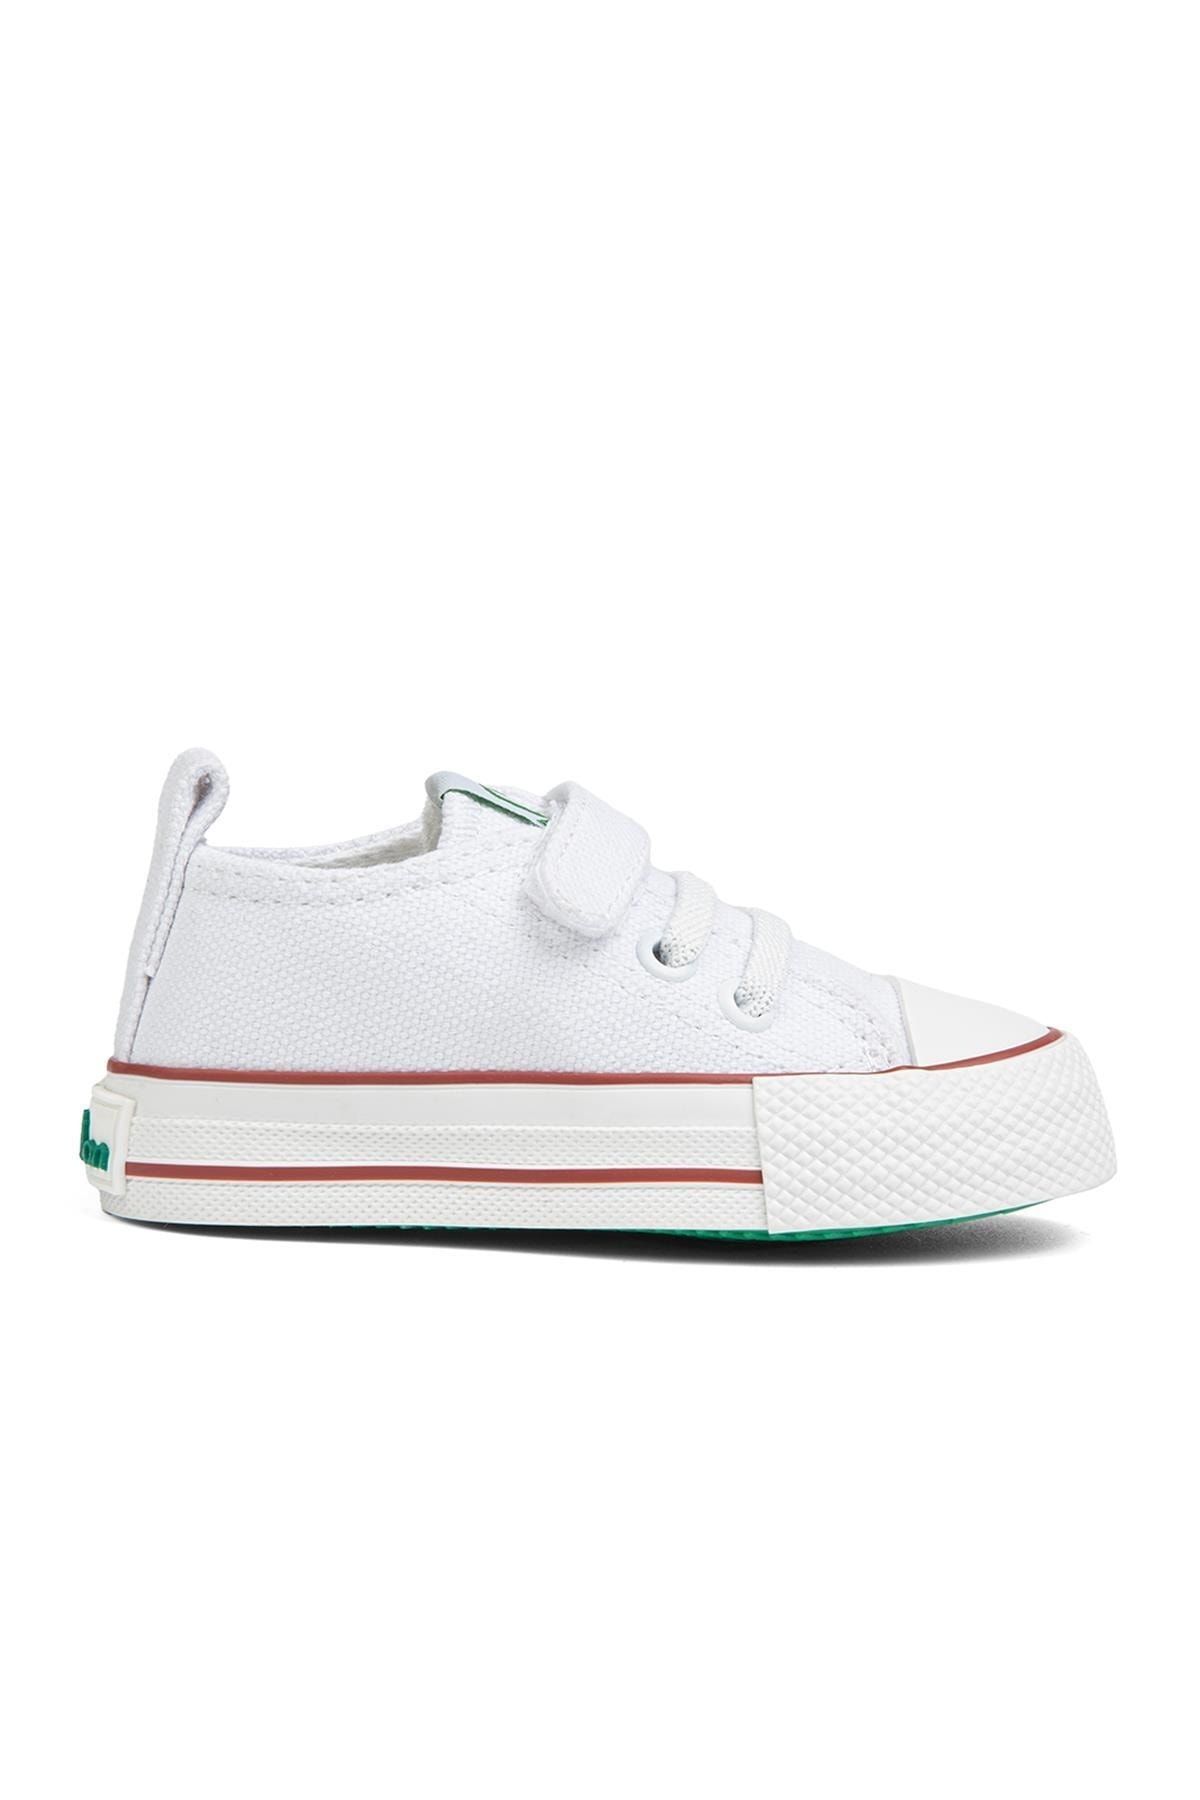 Benetton ® | Bn-30816-2- Beyaz - Çocuk Spor Ayakkabı